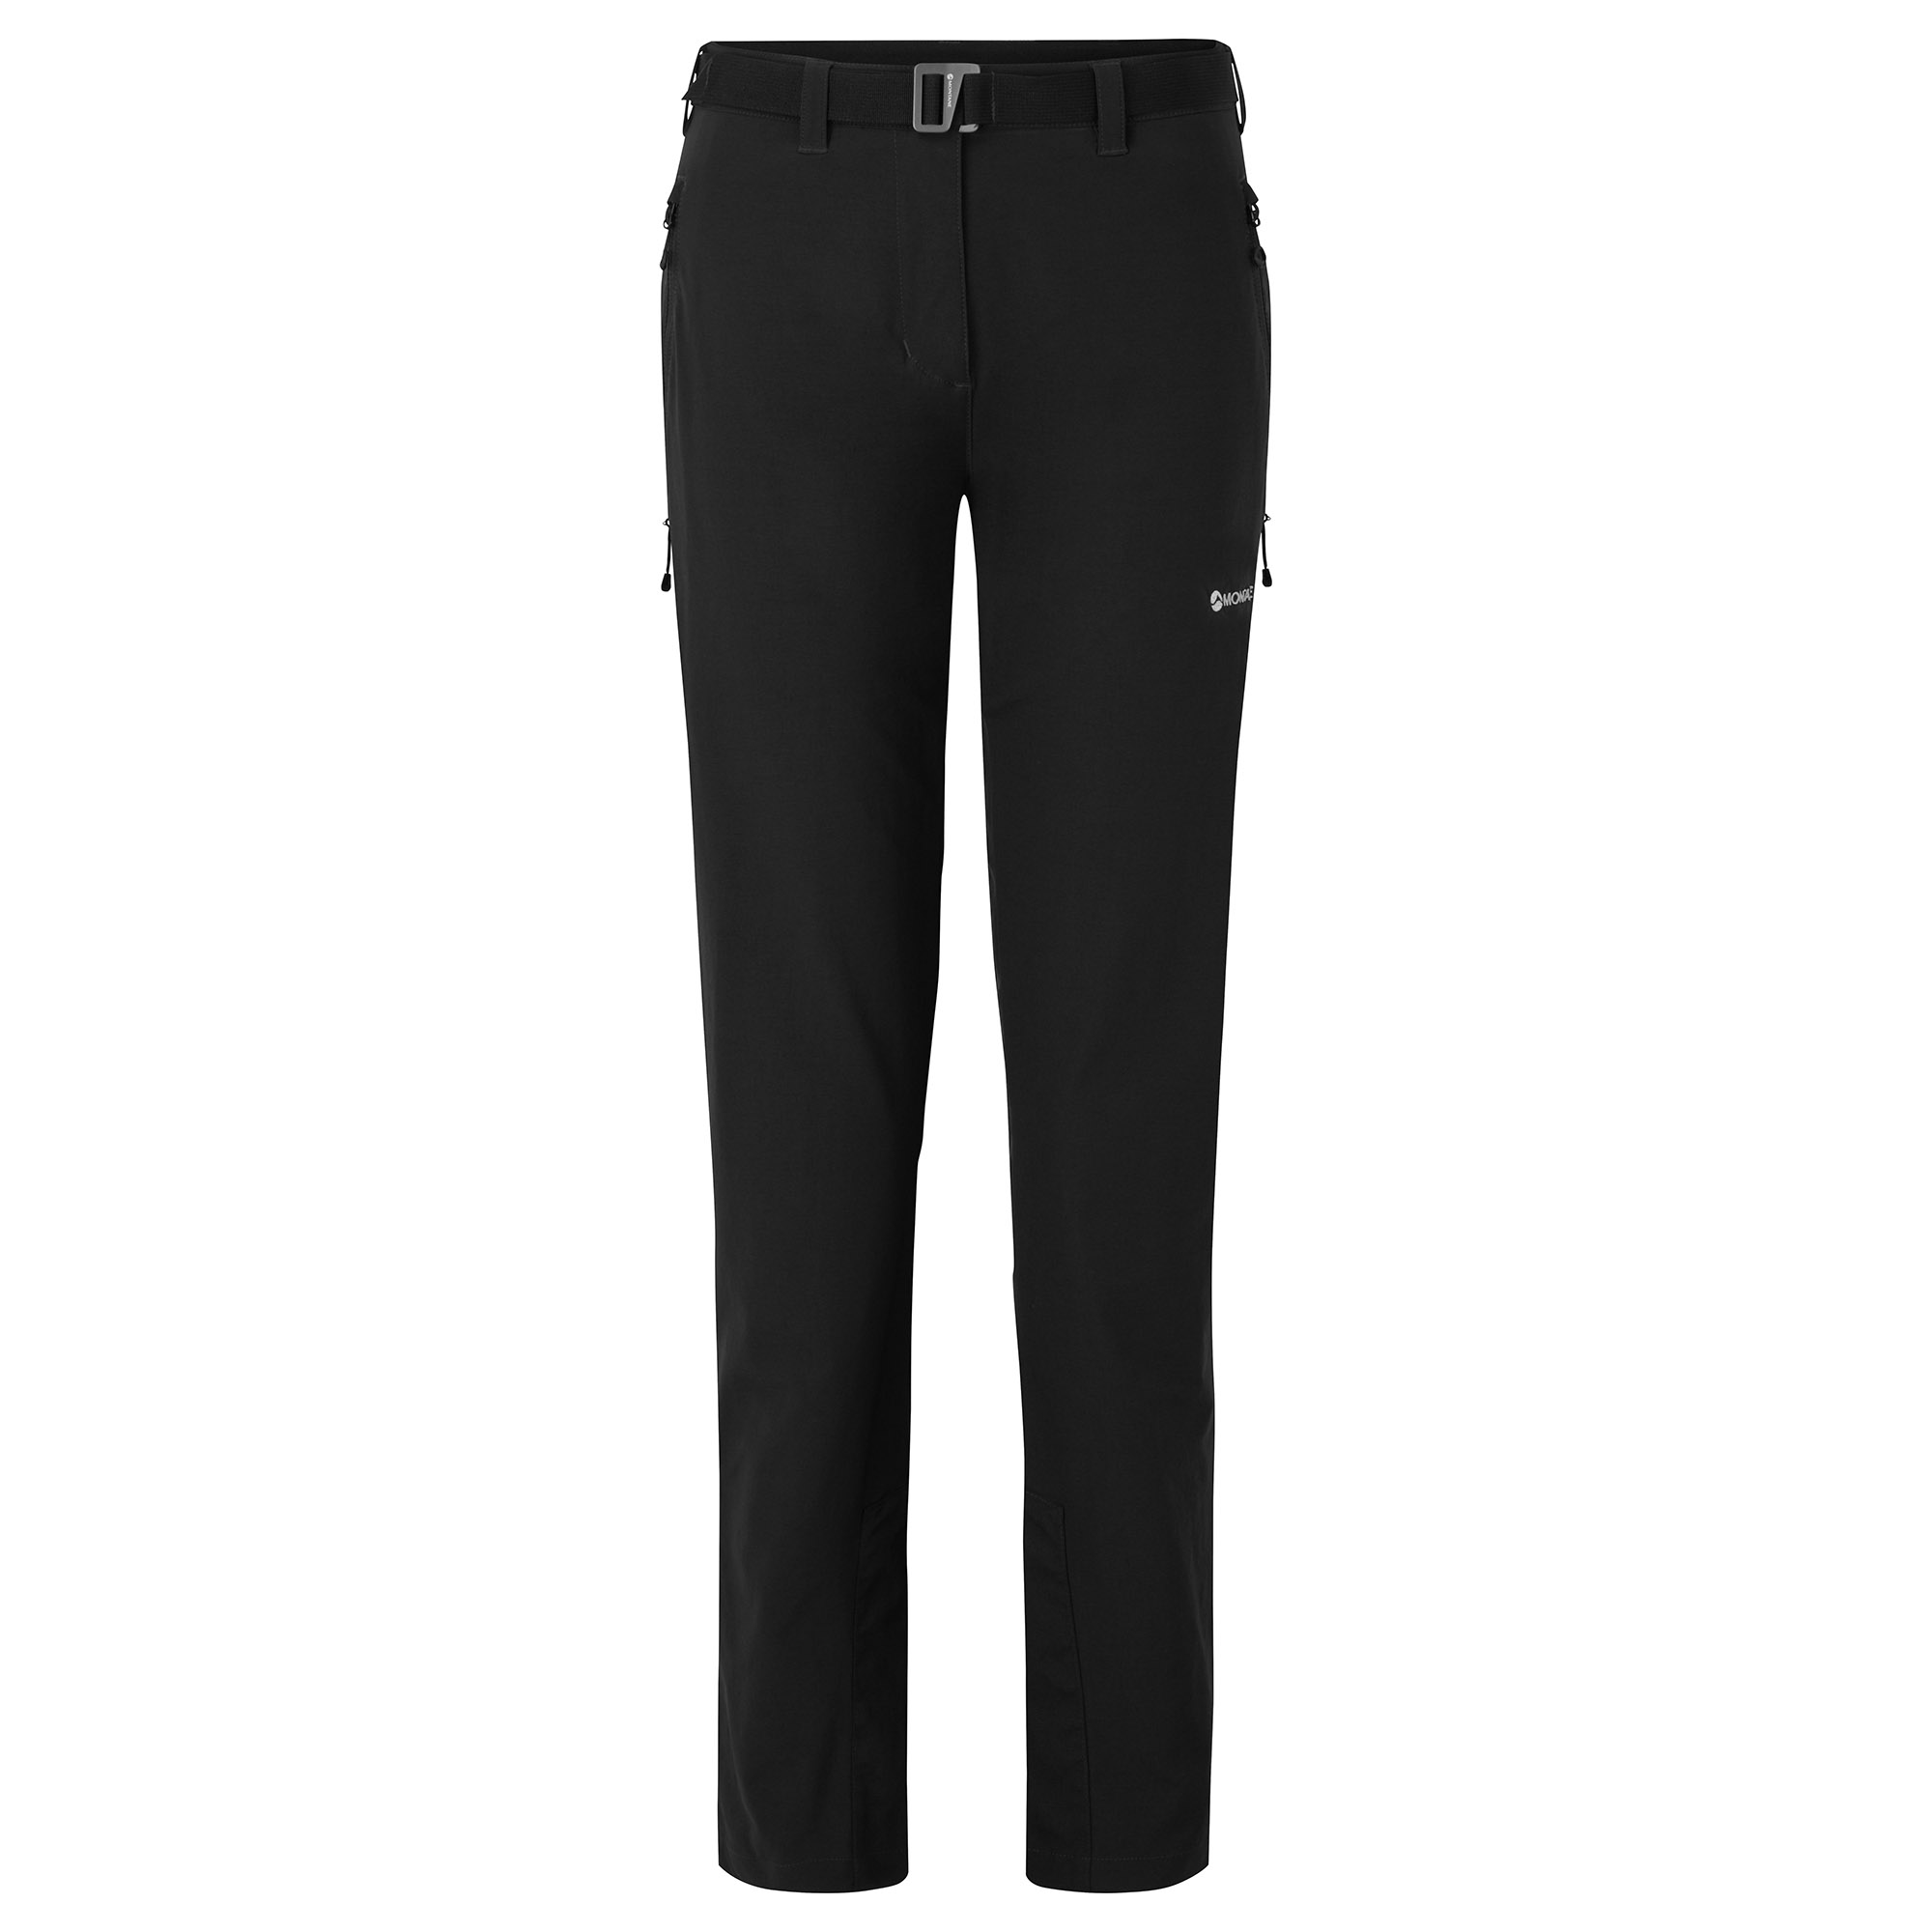 Montane dámské softshellové kalhoty Fem Terra Stretch Pants - Prodloužené Nohavice Barva: black, Velikost: UK16/US12/EUR44/XL